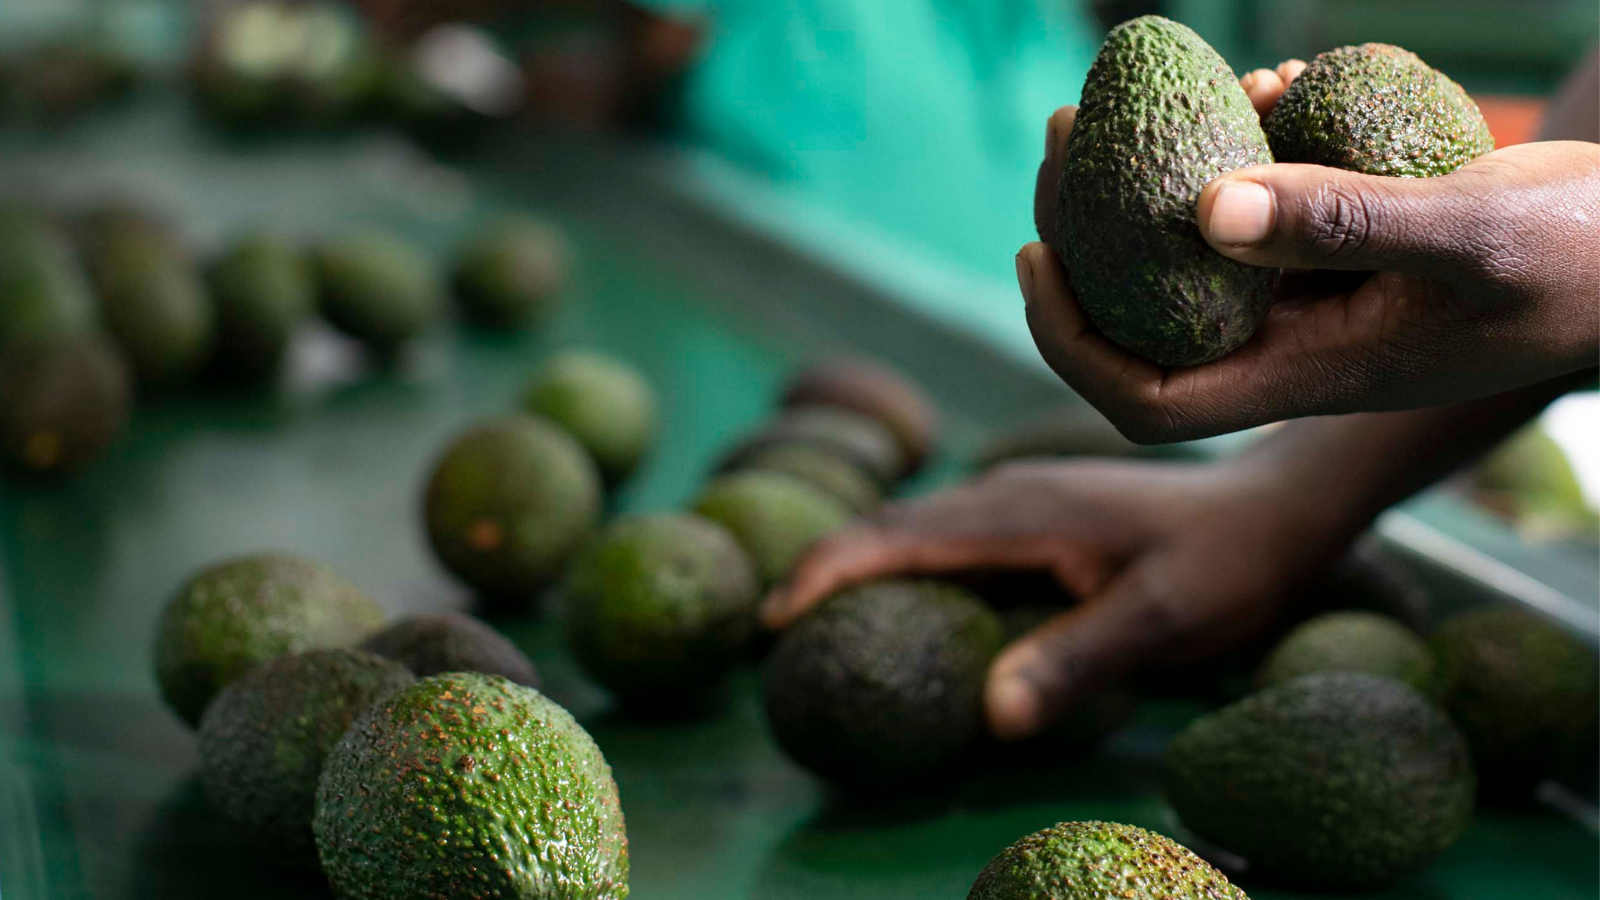 Fresh Avocado Suppliers in Kenya